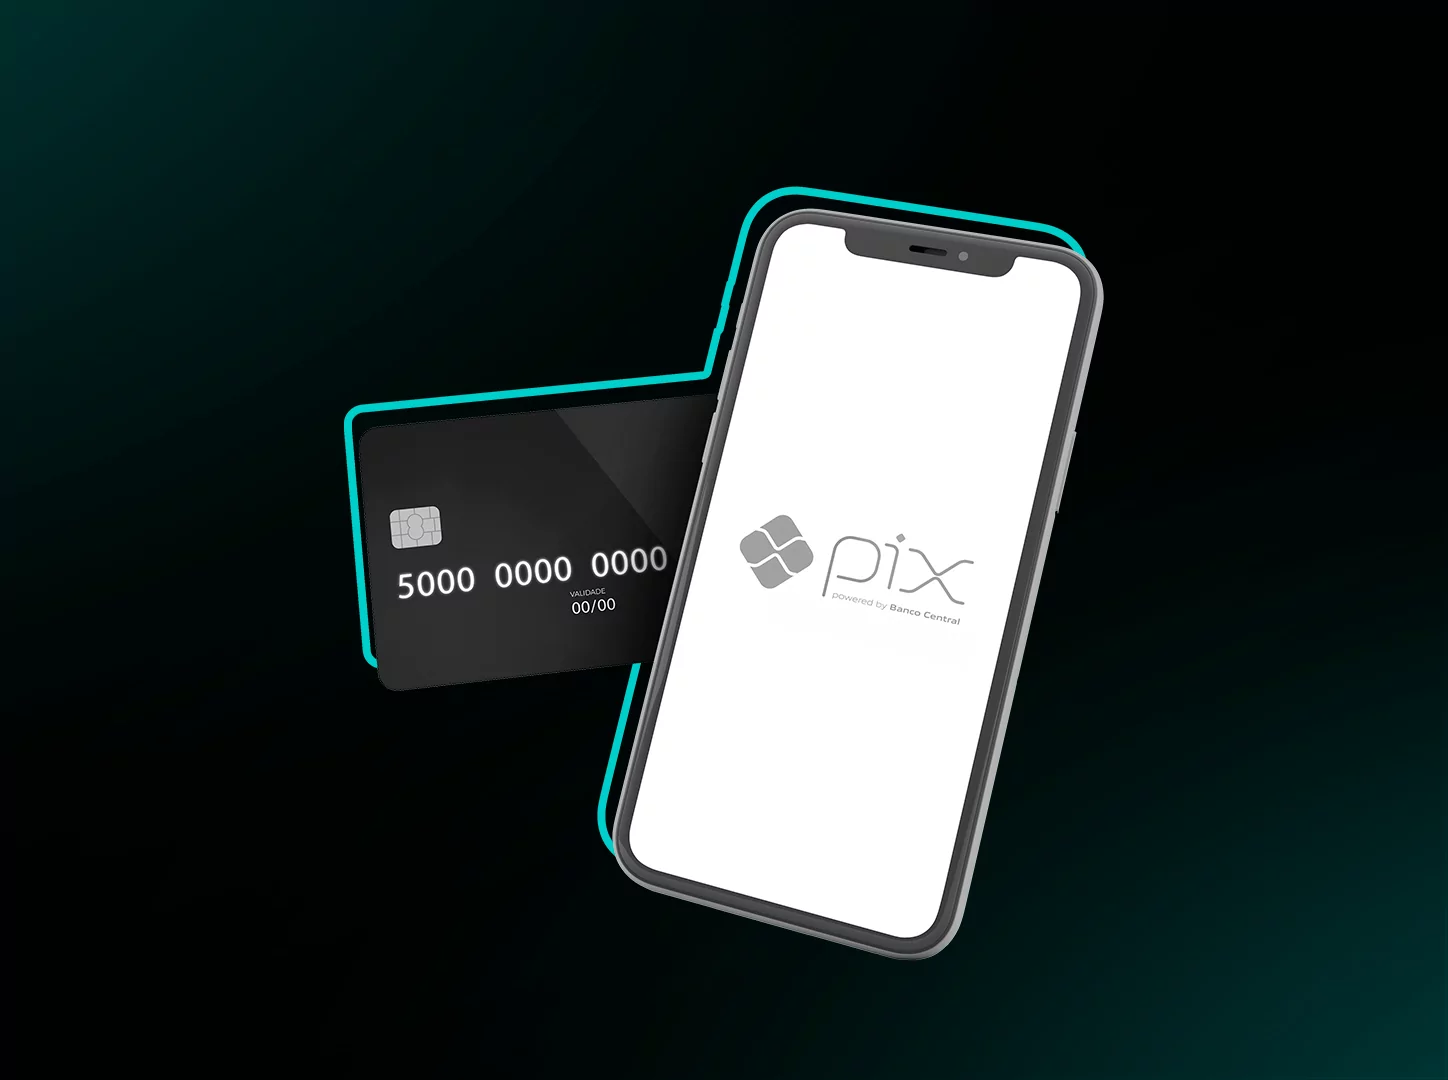 Pix com Cartão de Crédito: Top 5 Bancos e Taxas Envolvidas